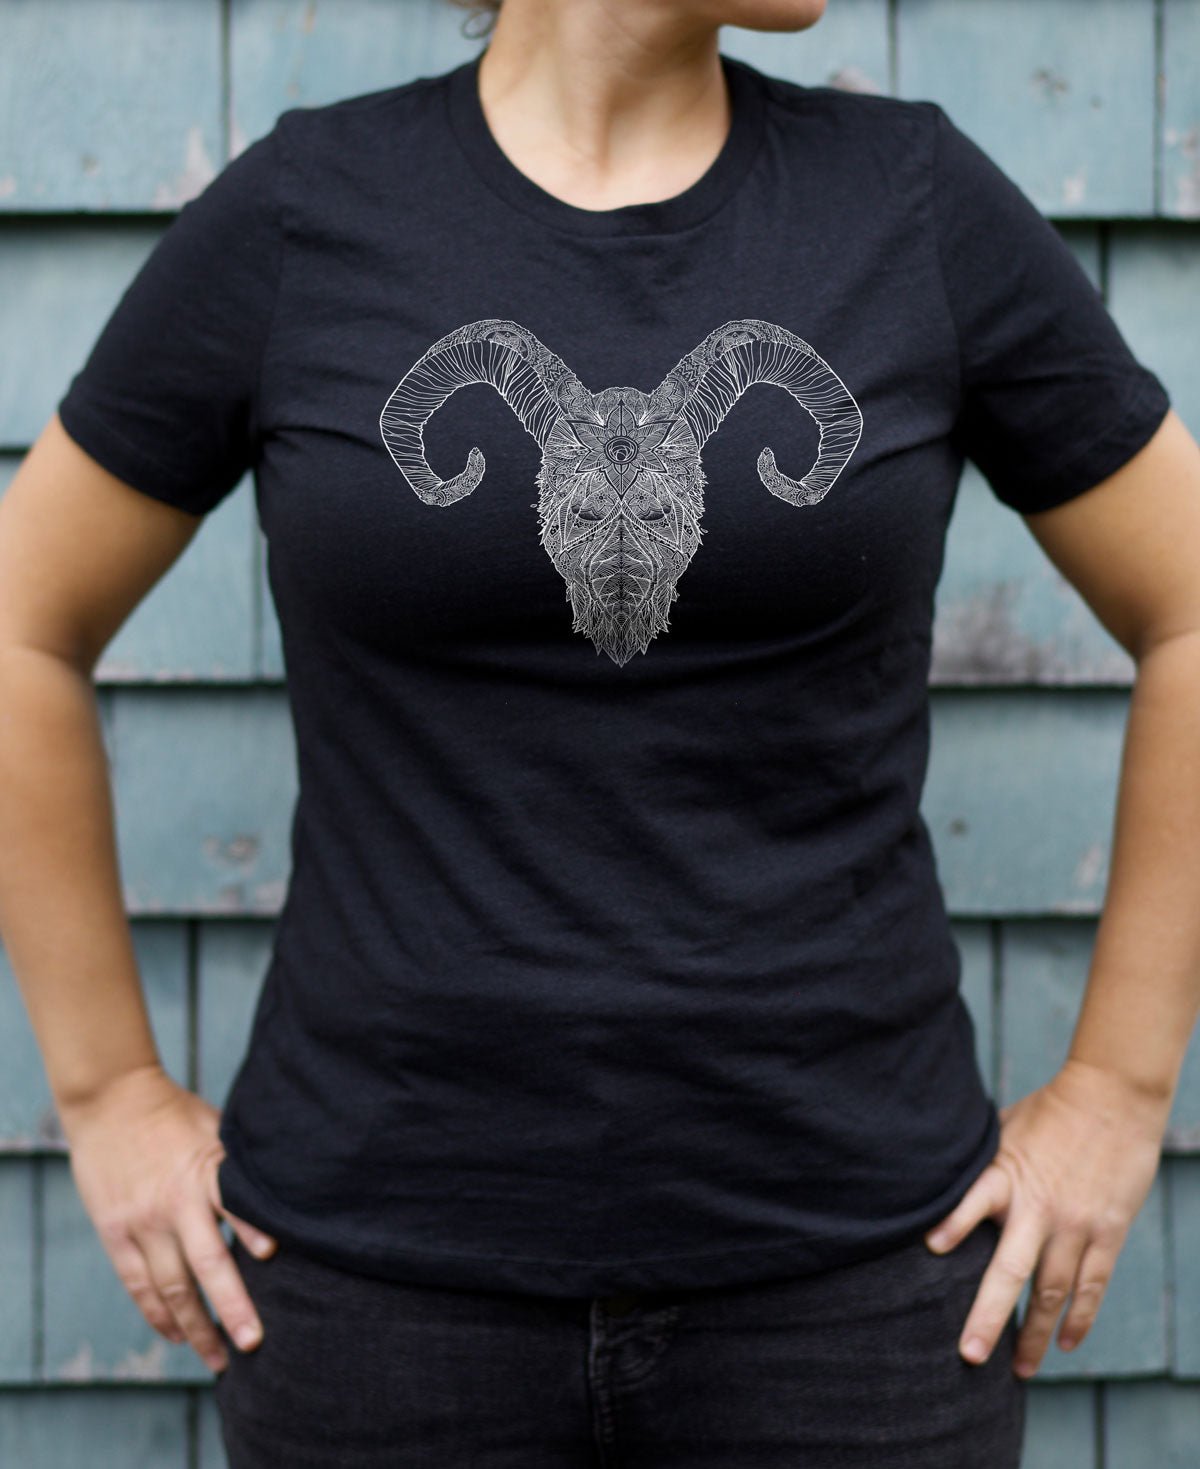 Ram's Skull - Women's Graphic T-Shirt